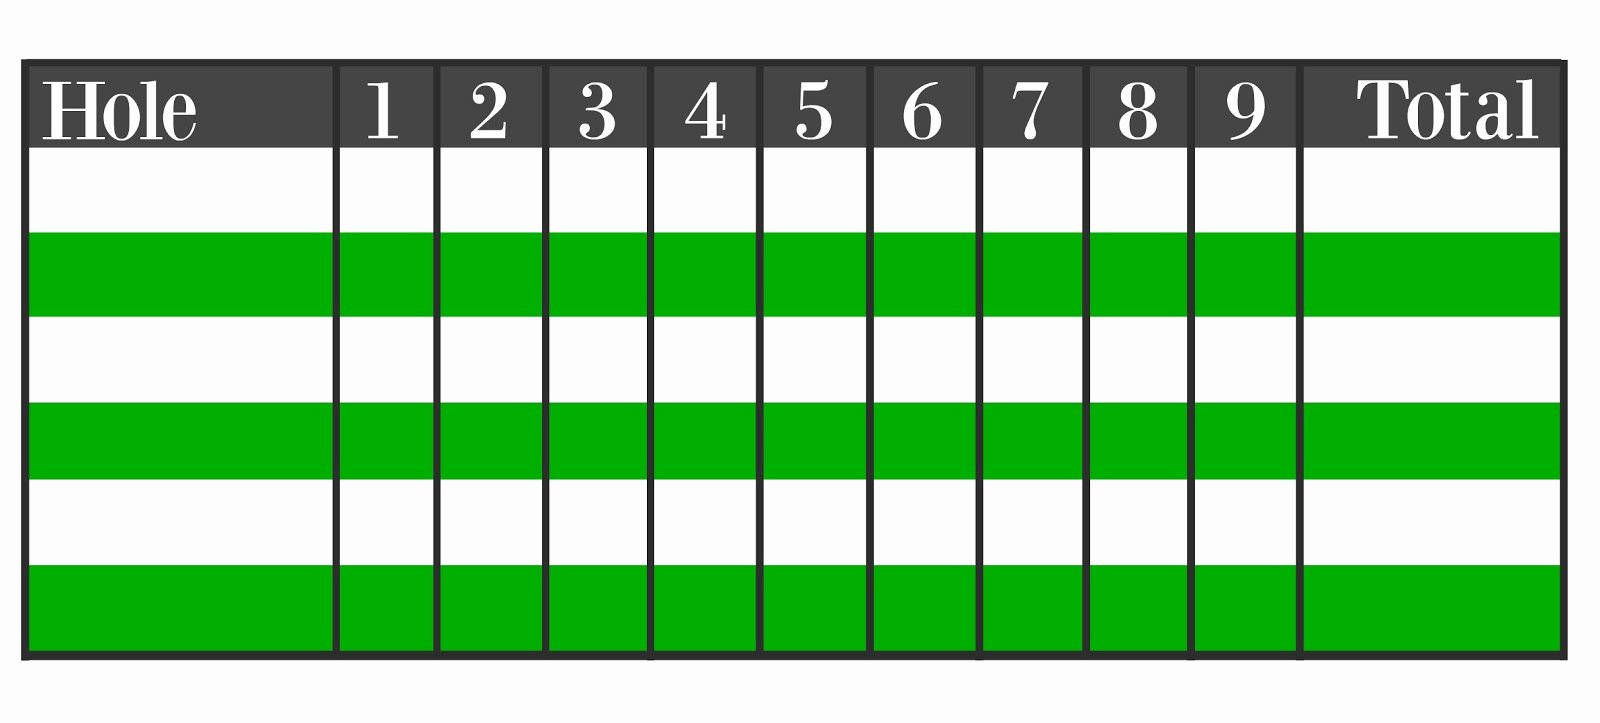 Mini Golf Score Card Best Of Mini Golf Scorecard Template